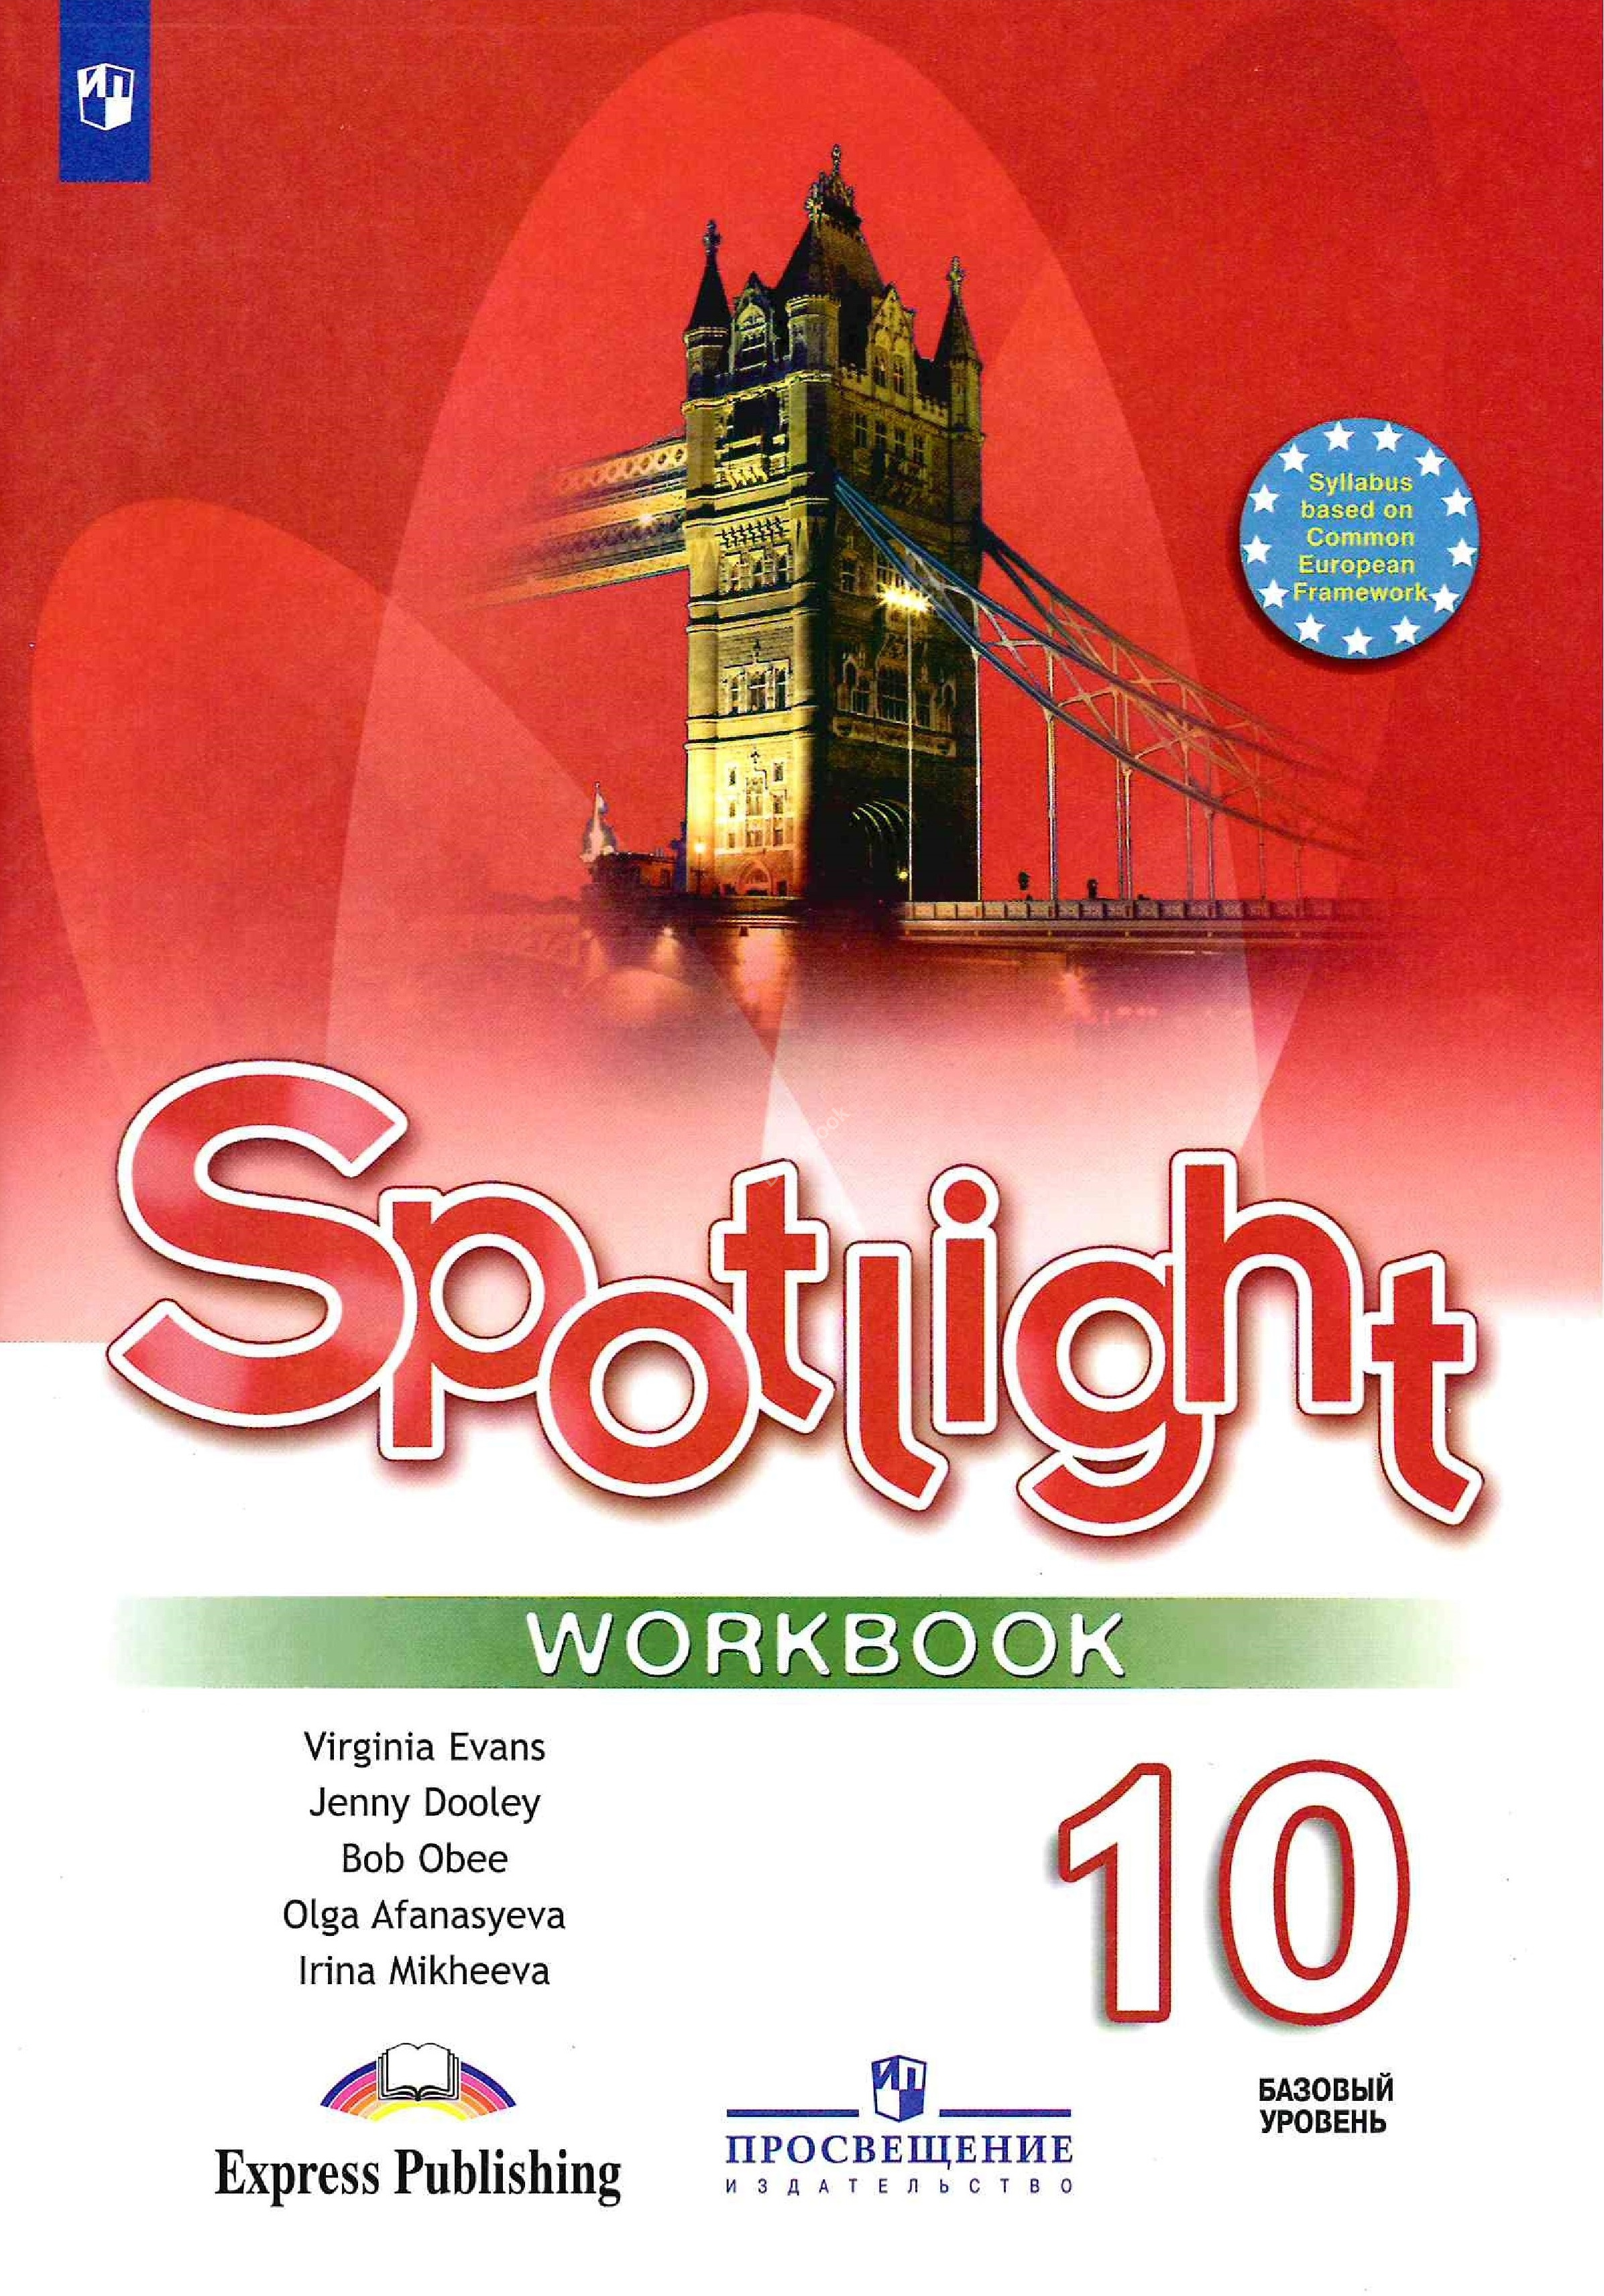 Spotlight 5 воркбук. Workbook Spotlight 5 класс ваулина. Spotlight 5 Workbook английский язык Эванс. Англ 5 класс рабочая тетрадь Spotlight. Тетради для английского языка 5 класс спотлайт.